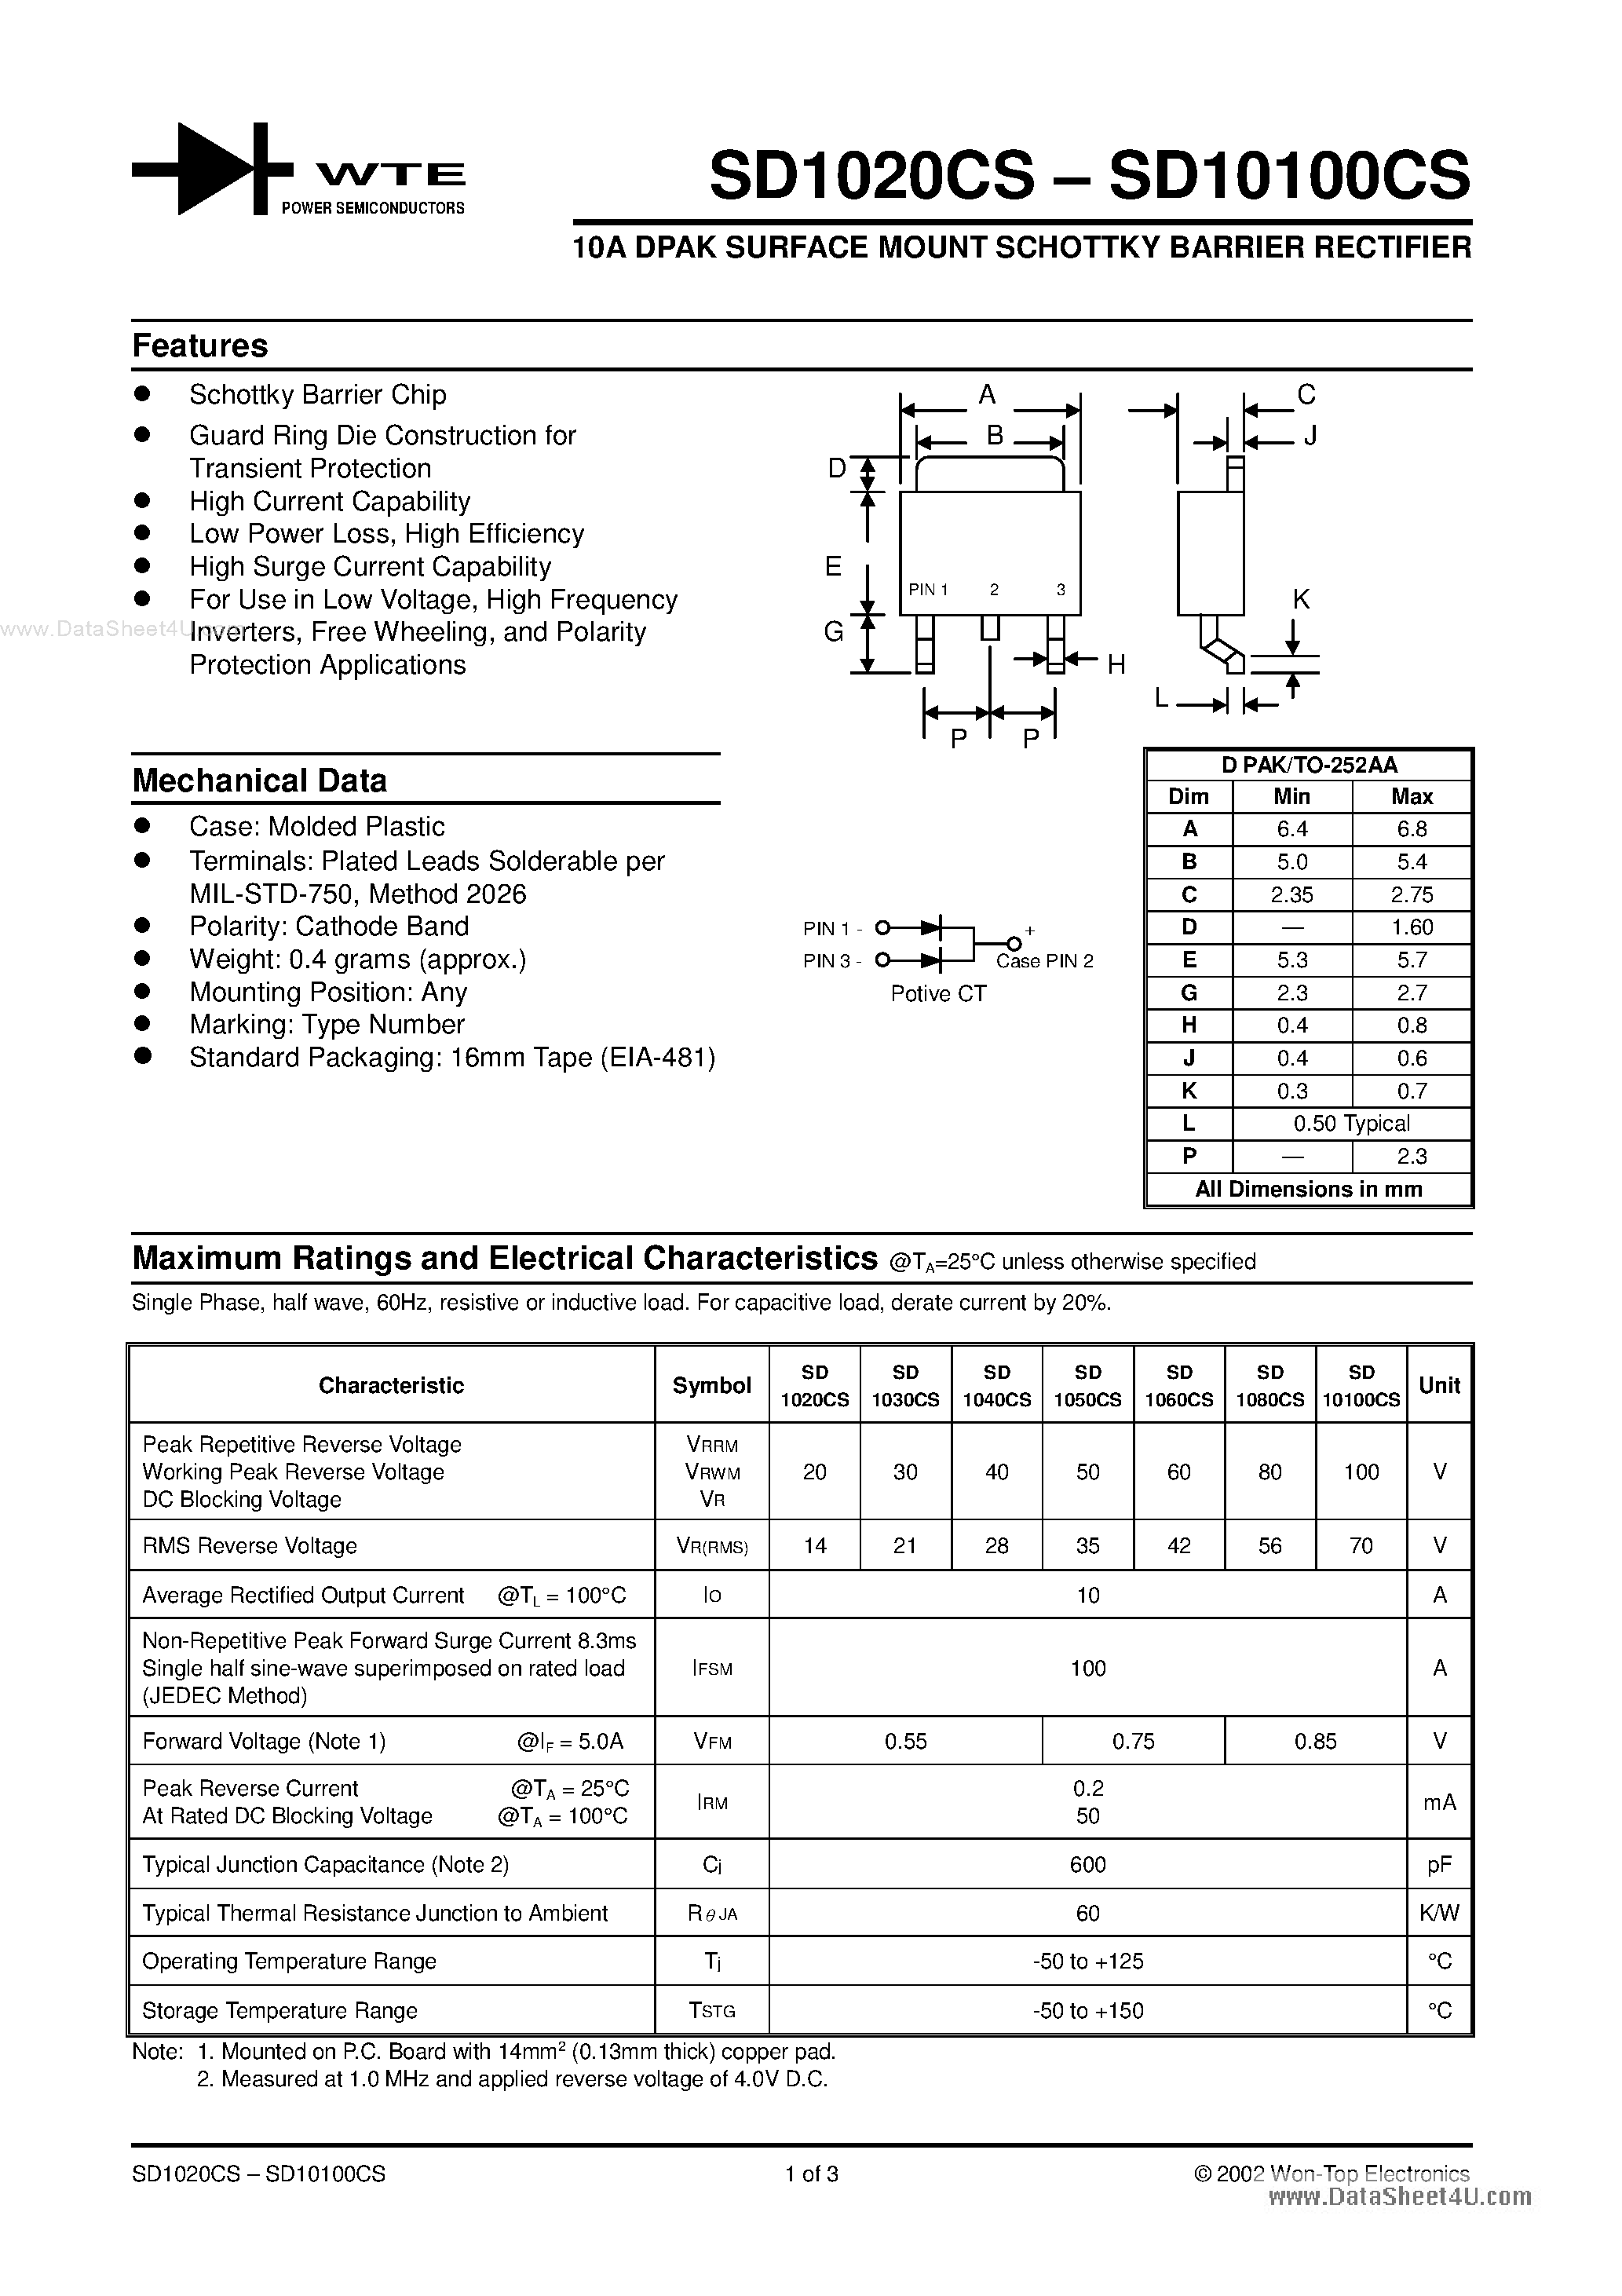 Datasheet SD1008CS - (SD1020CS - SD10100CS) 10a Dpak Surface Mount Schottky Barrier Rectifier page 1